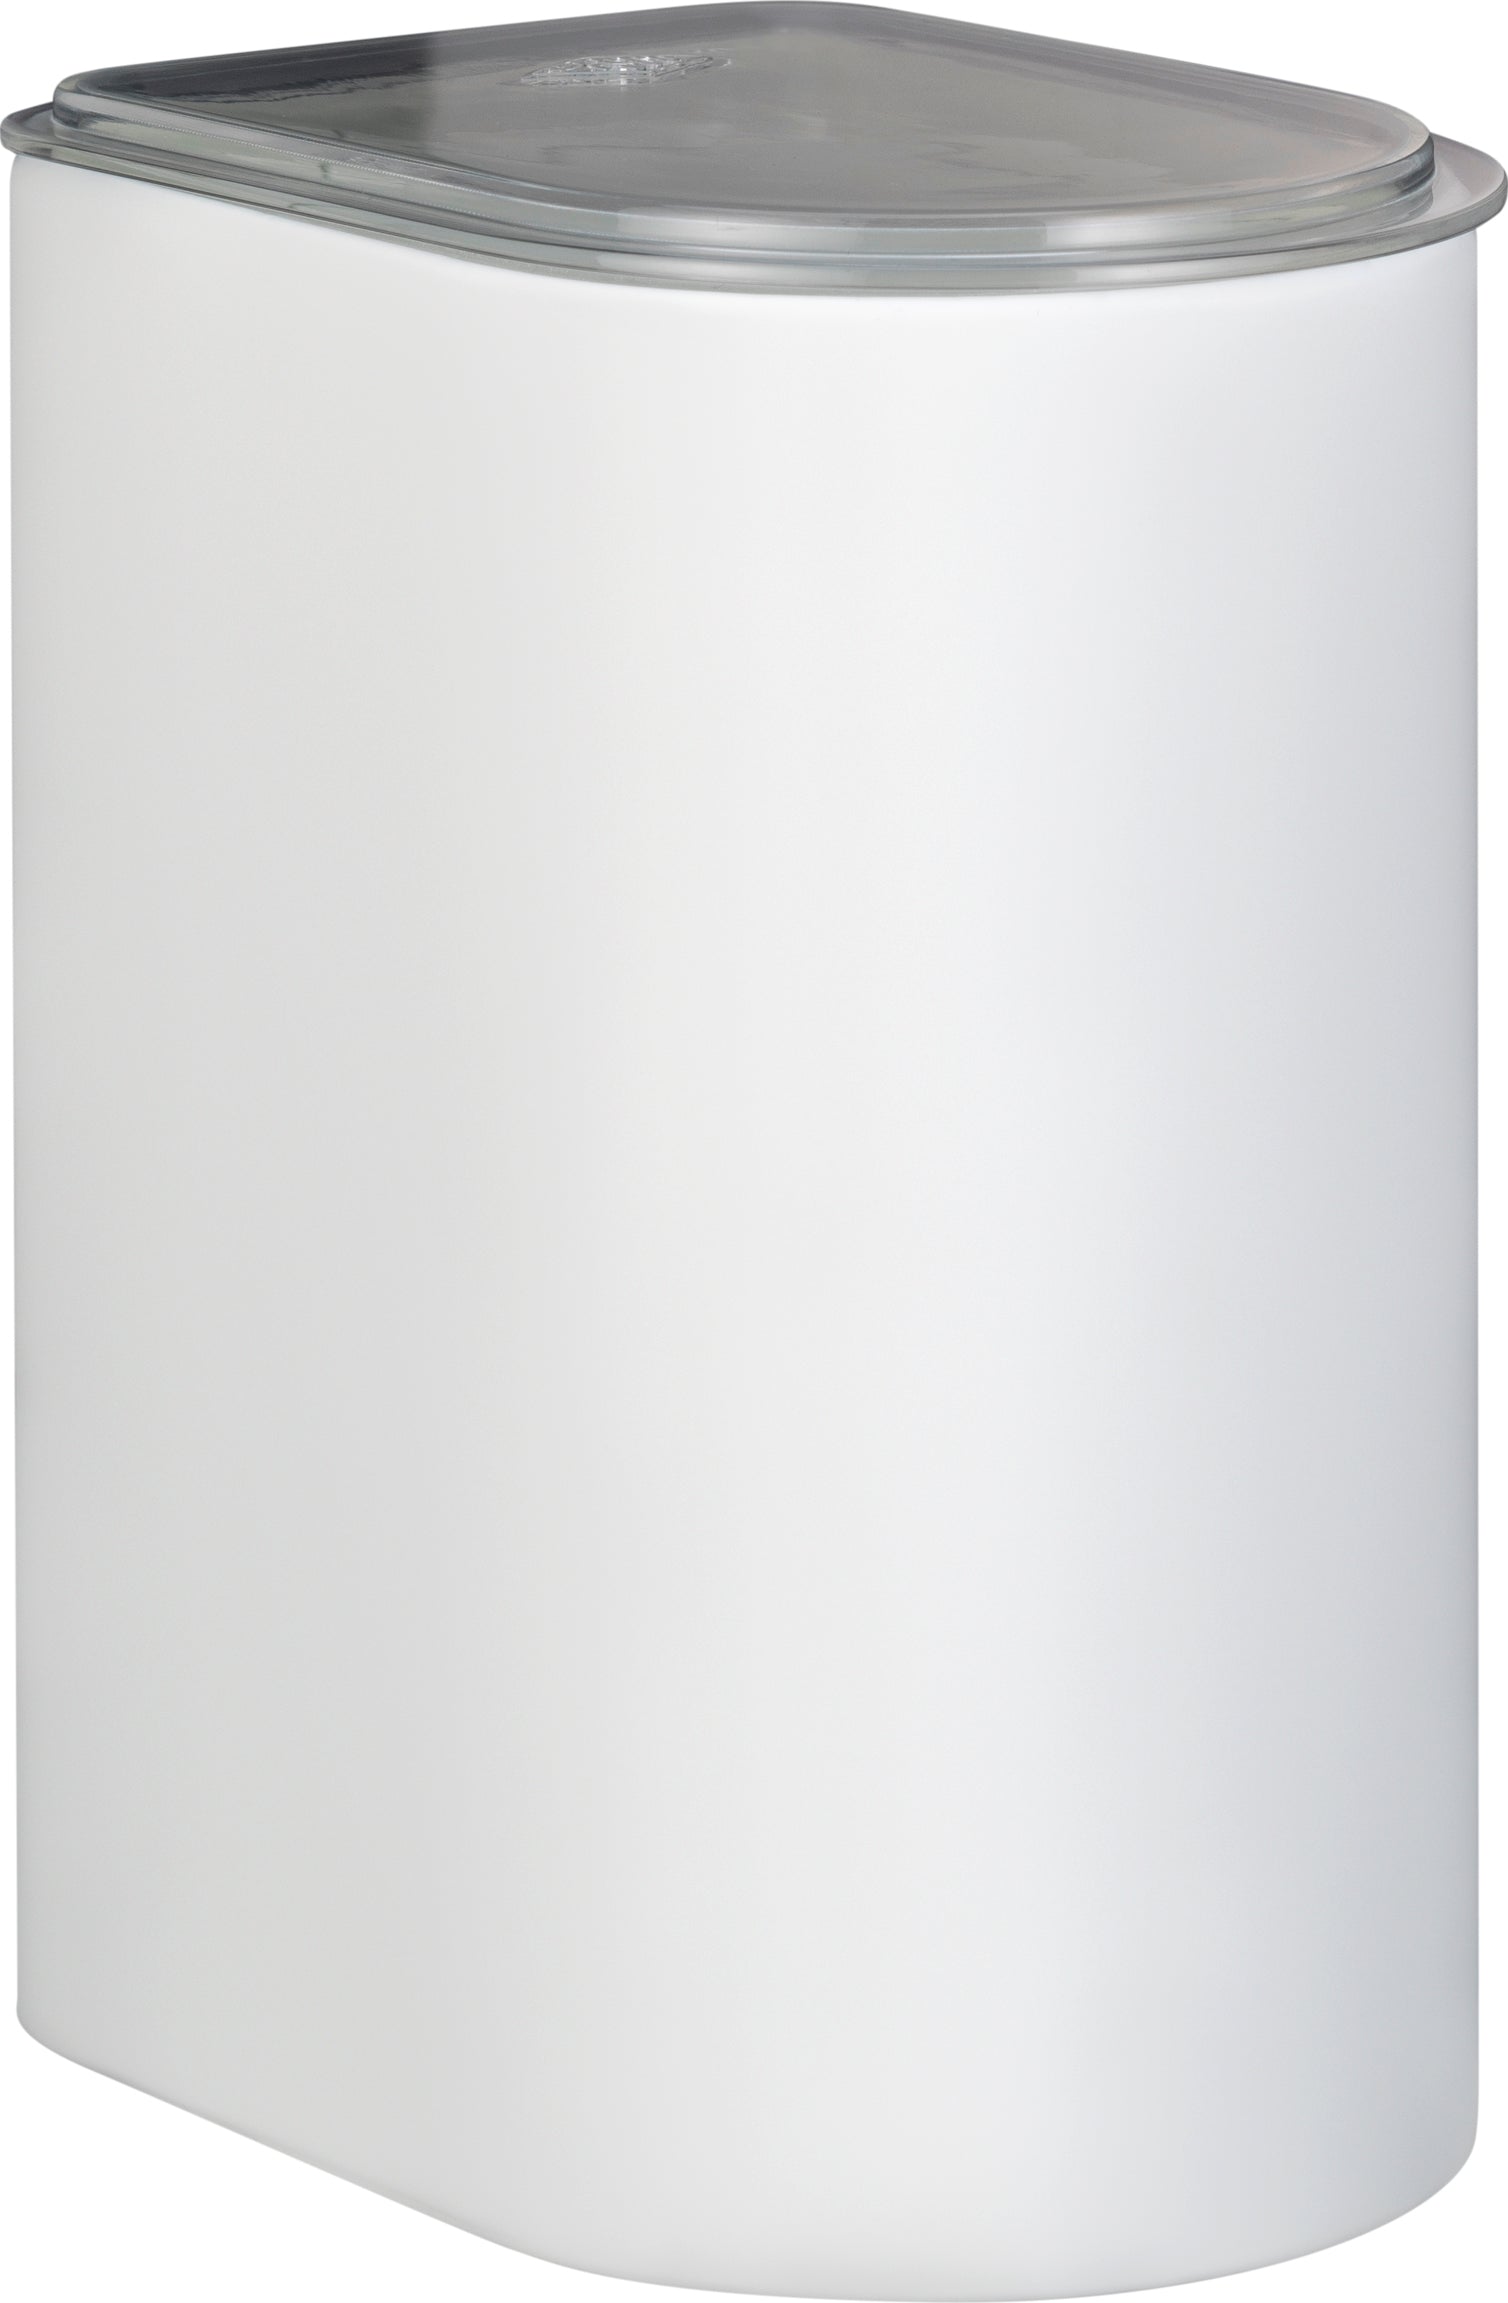 Wesco Kanister 3 Liter mit Acryldeckel, weißer Matt